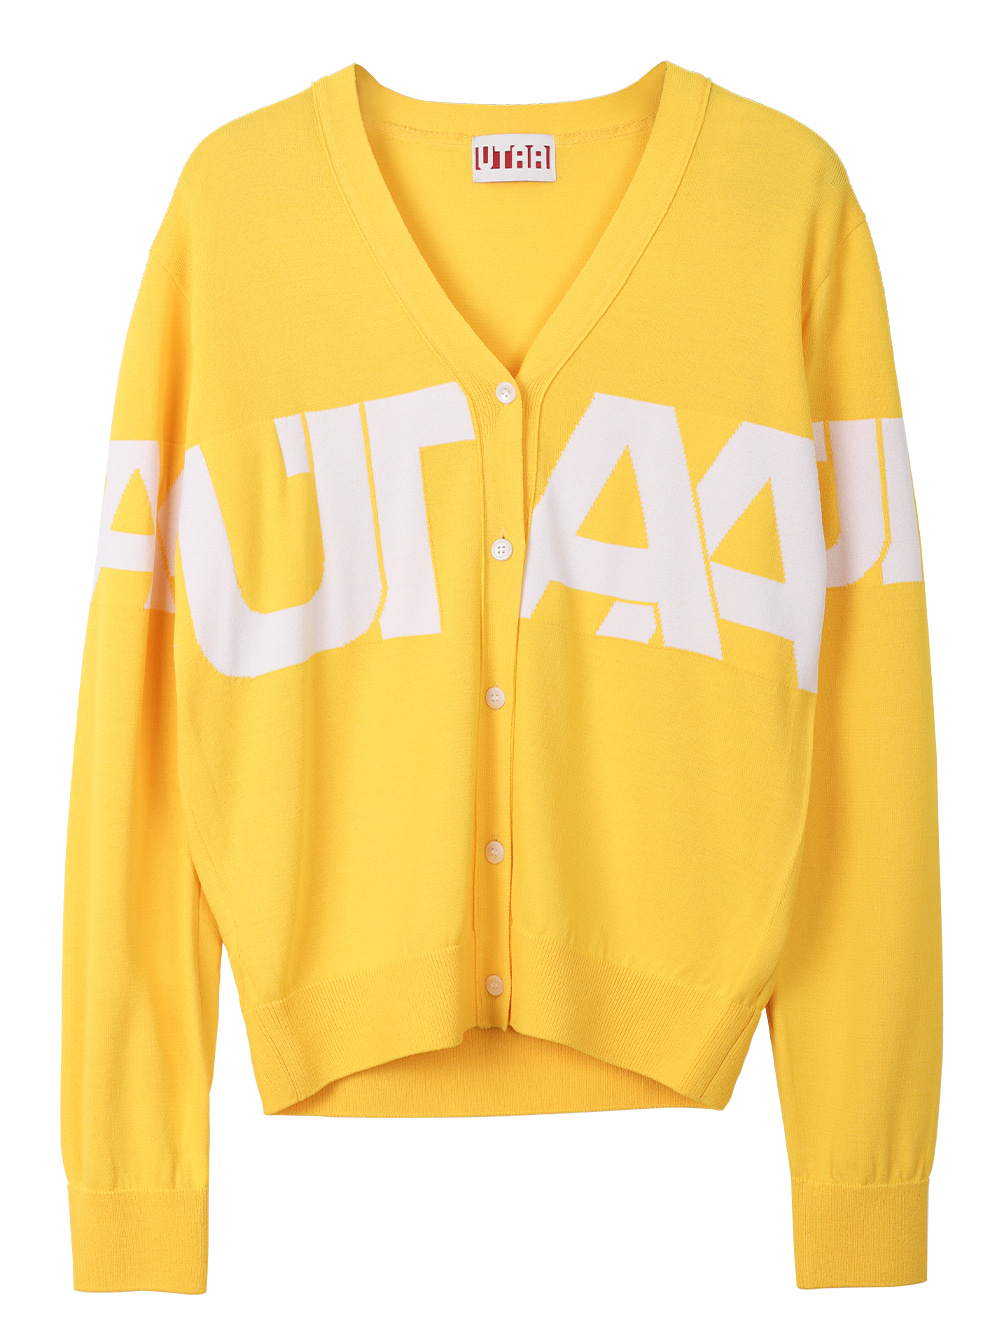 UTAA Midday Academic Cardigan : Yellow (UA3KCF404YE)